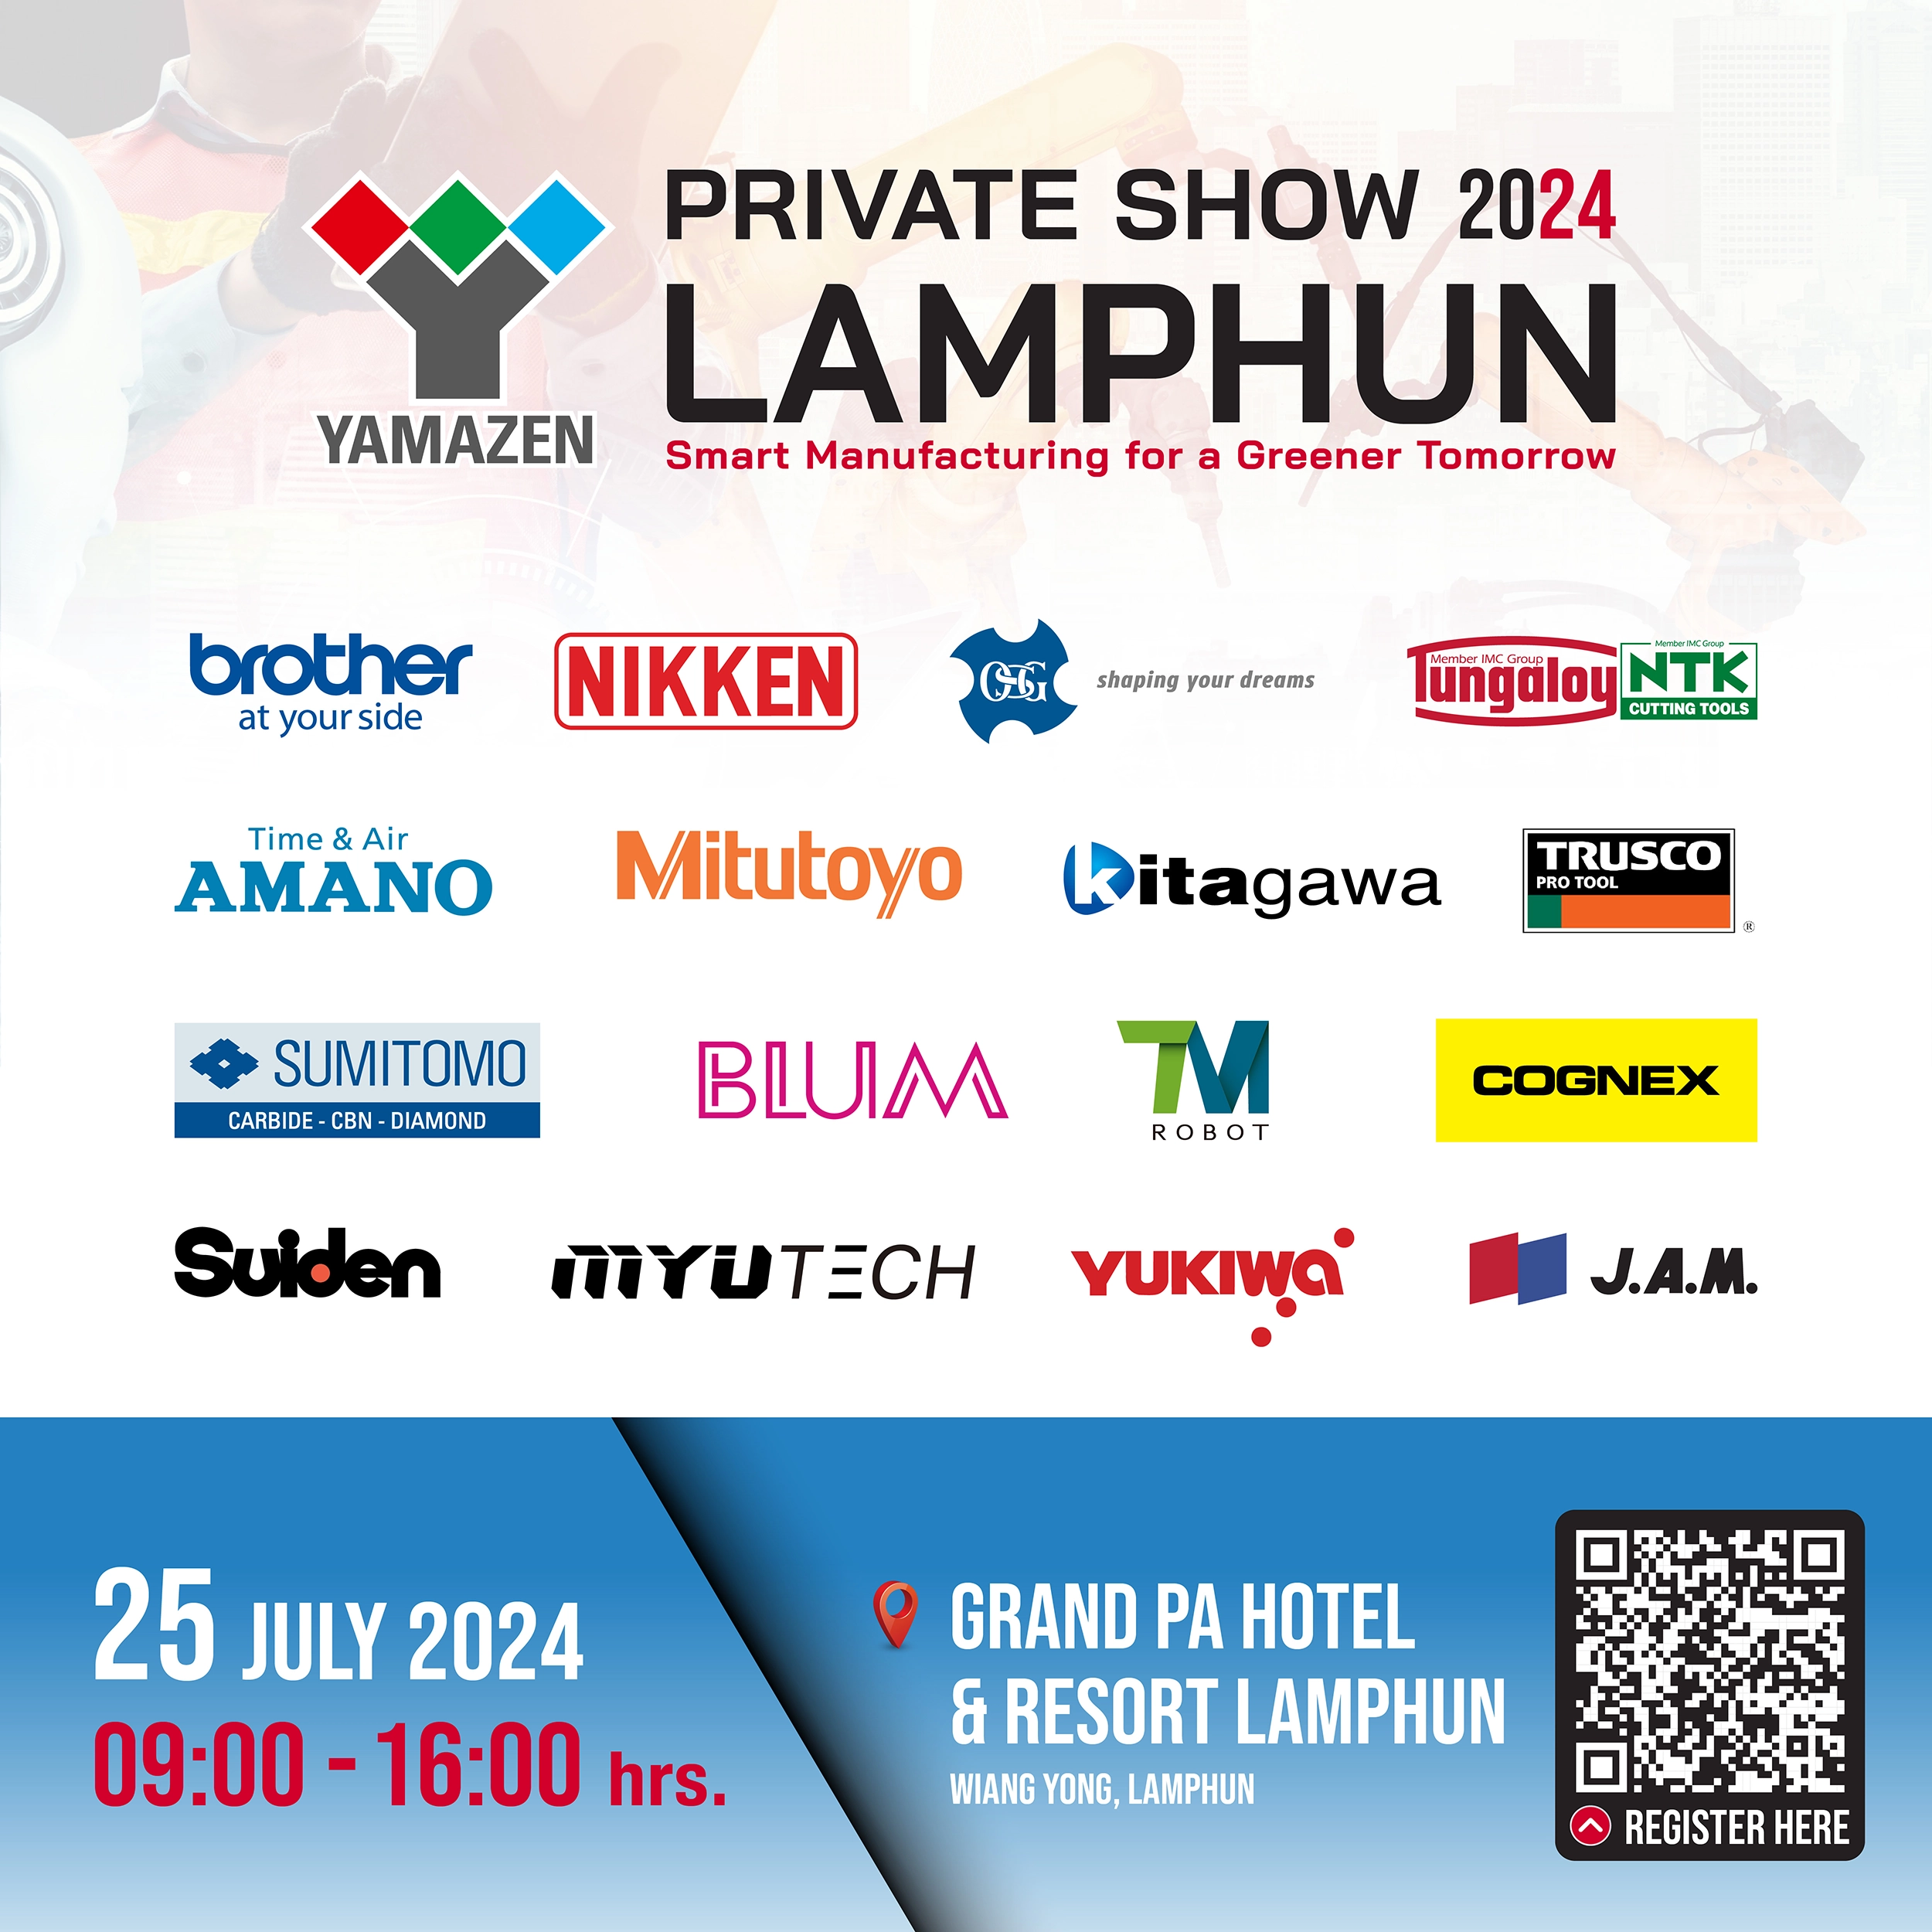 Lamphun Private Show 2024